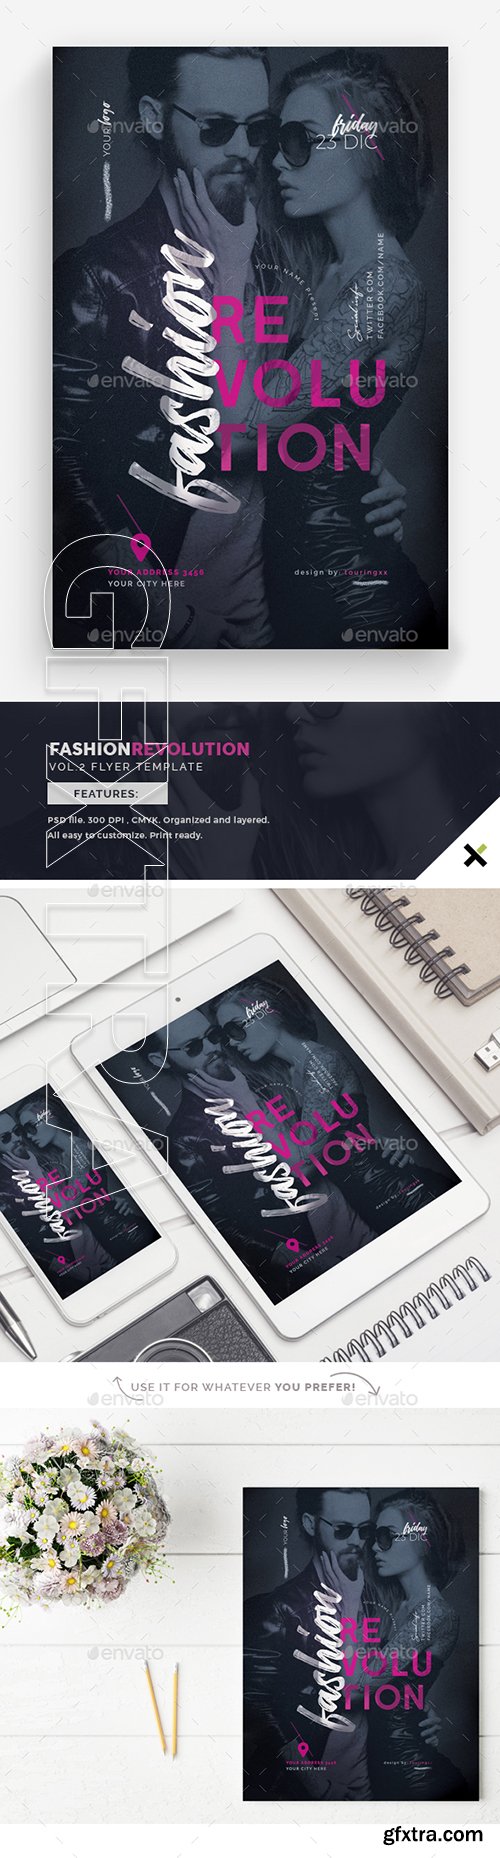 GraphicRiver - Fashion Revolution Vol.2 Flyer Template 22850221